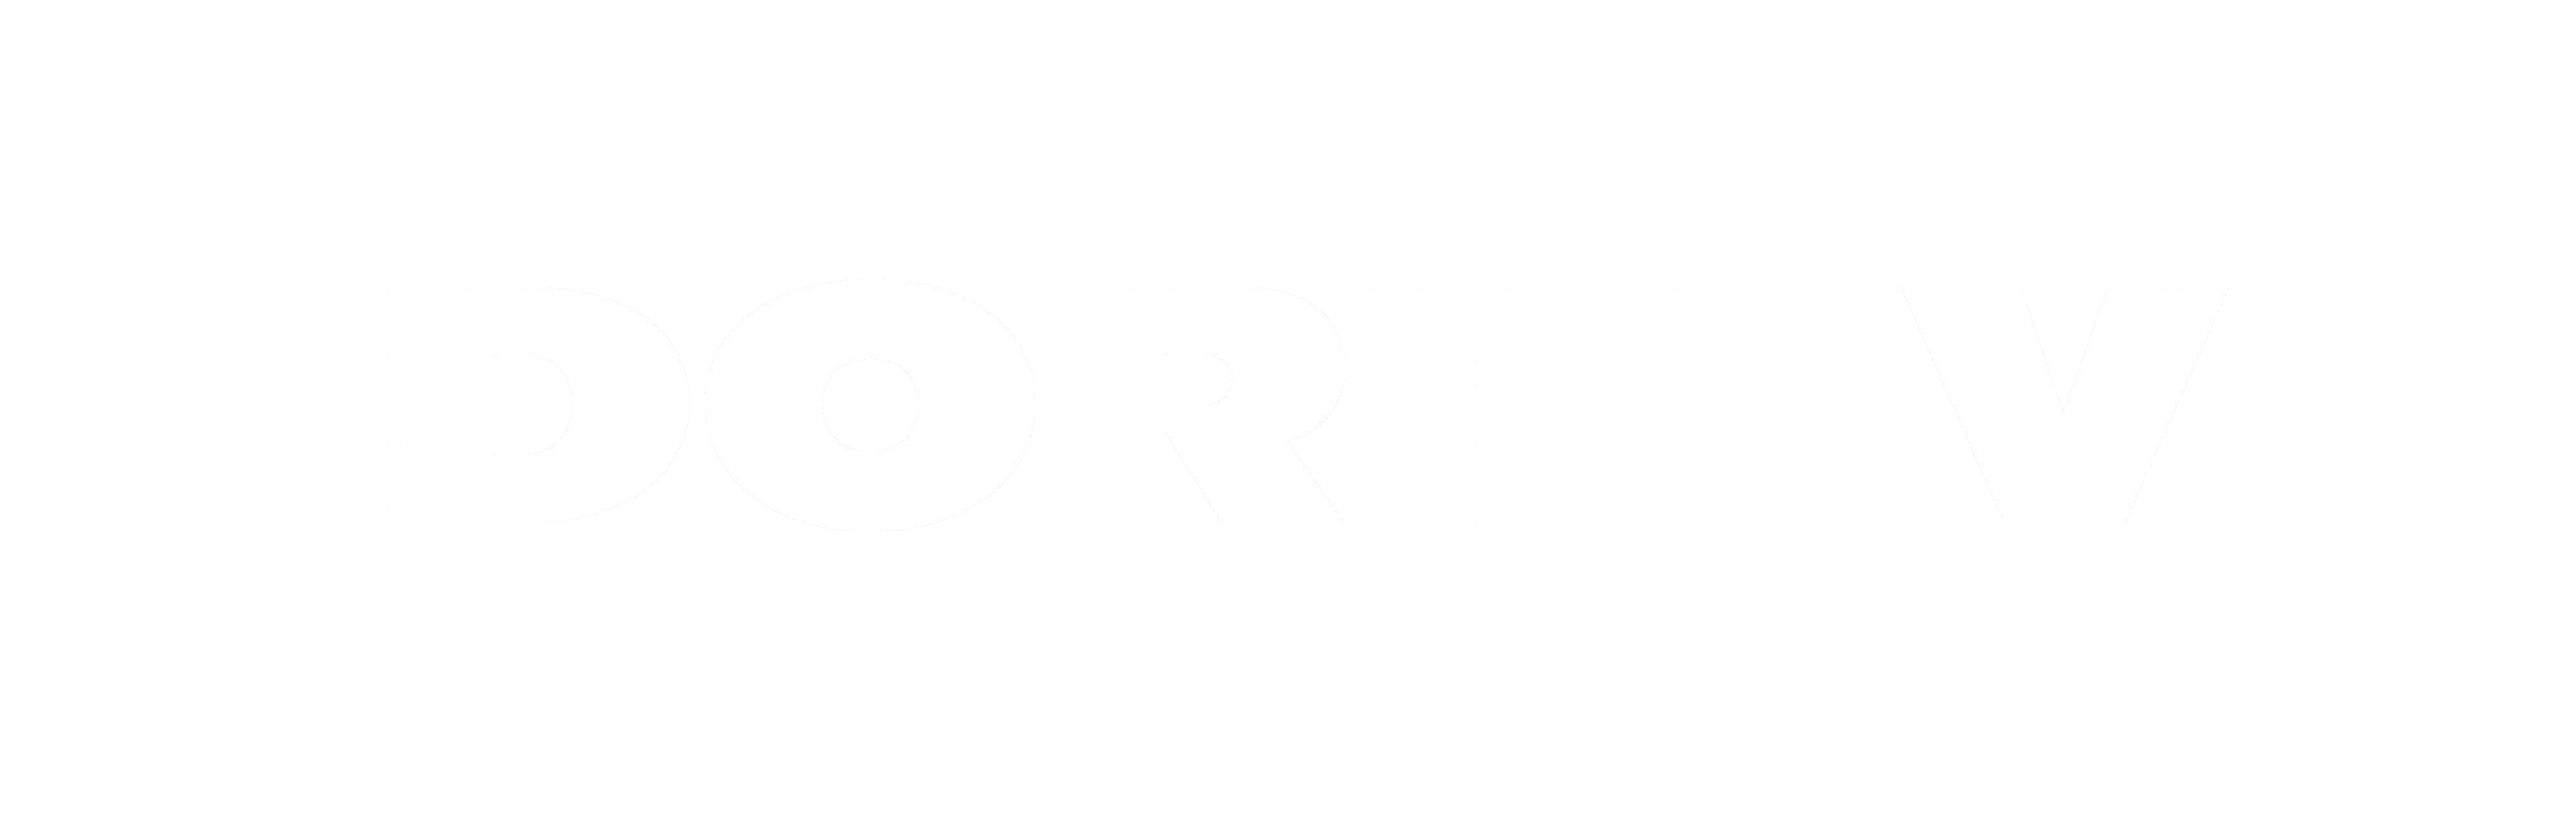 DorfTV logo